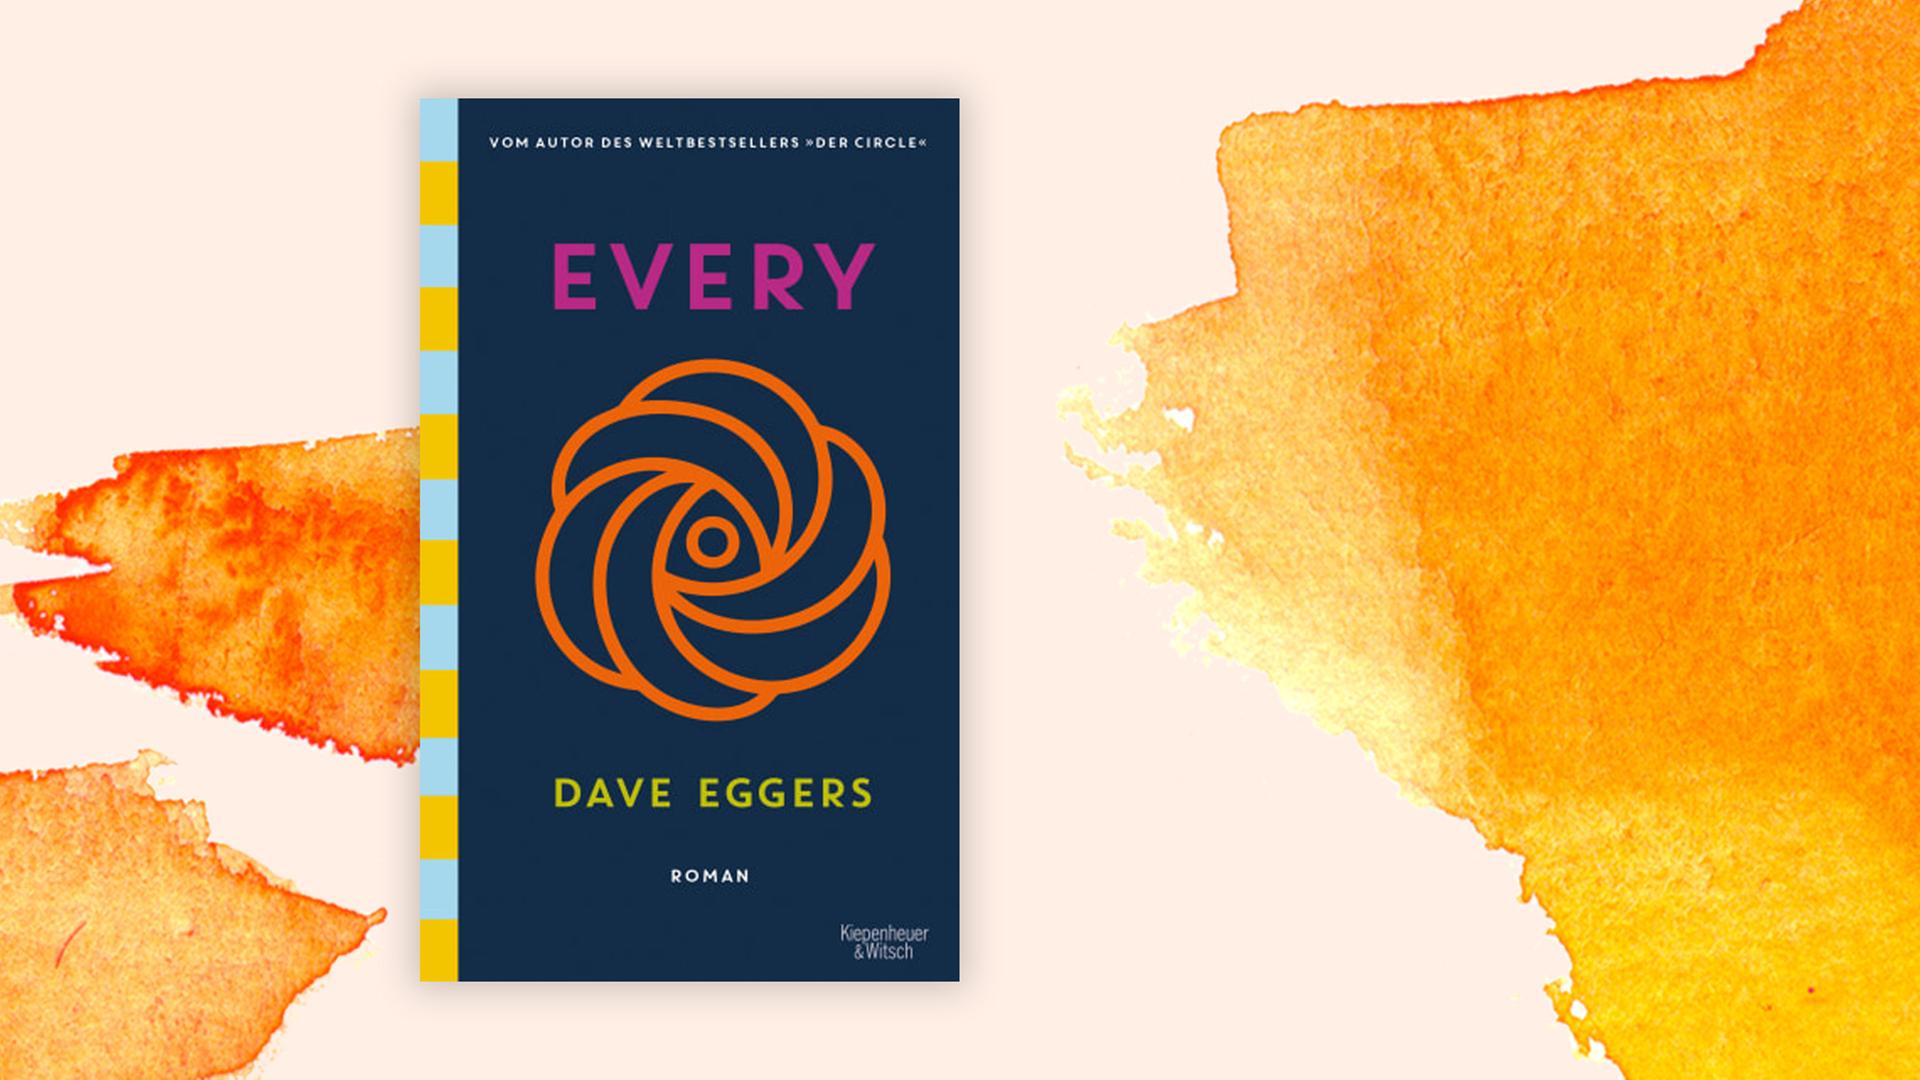 Cover des Romans "Every" von Dave Eggers vor orangefarbenem Aquarellhintergrund. Das Cover zeigt eine Art Logo, mutmaßlich das Logo des Konzerns "Every" in dem Roman. Das Logo sieht aus wie eine stilisierte, von oben betrachtete Rosenblüte.